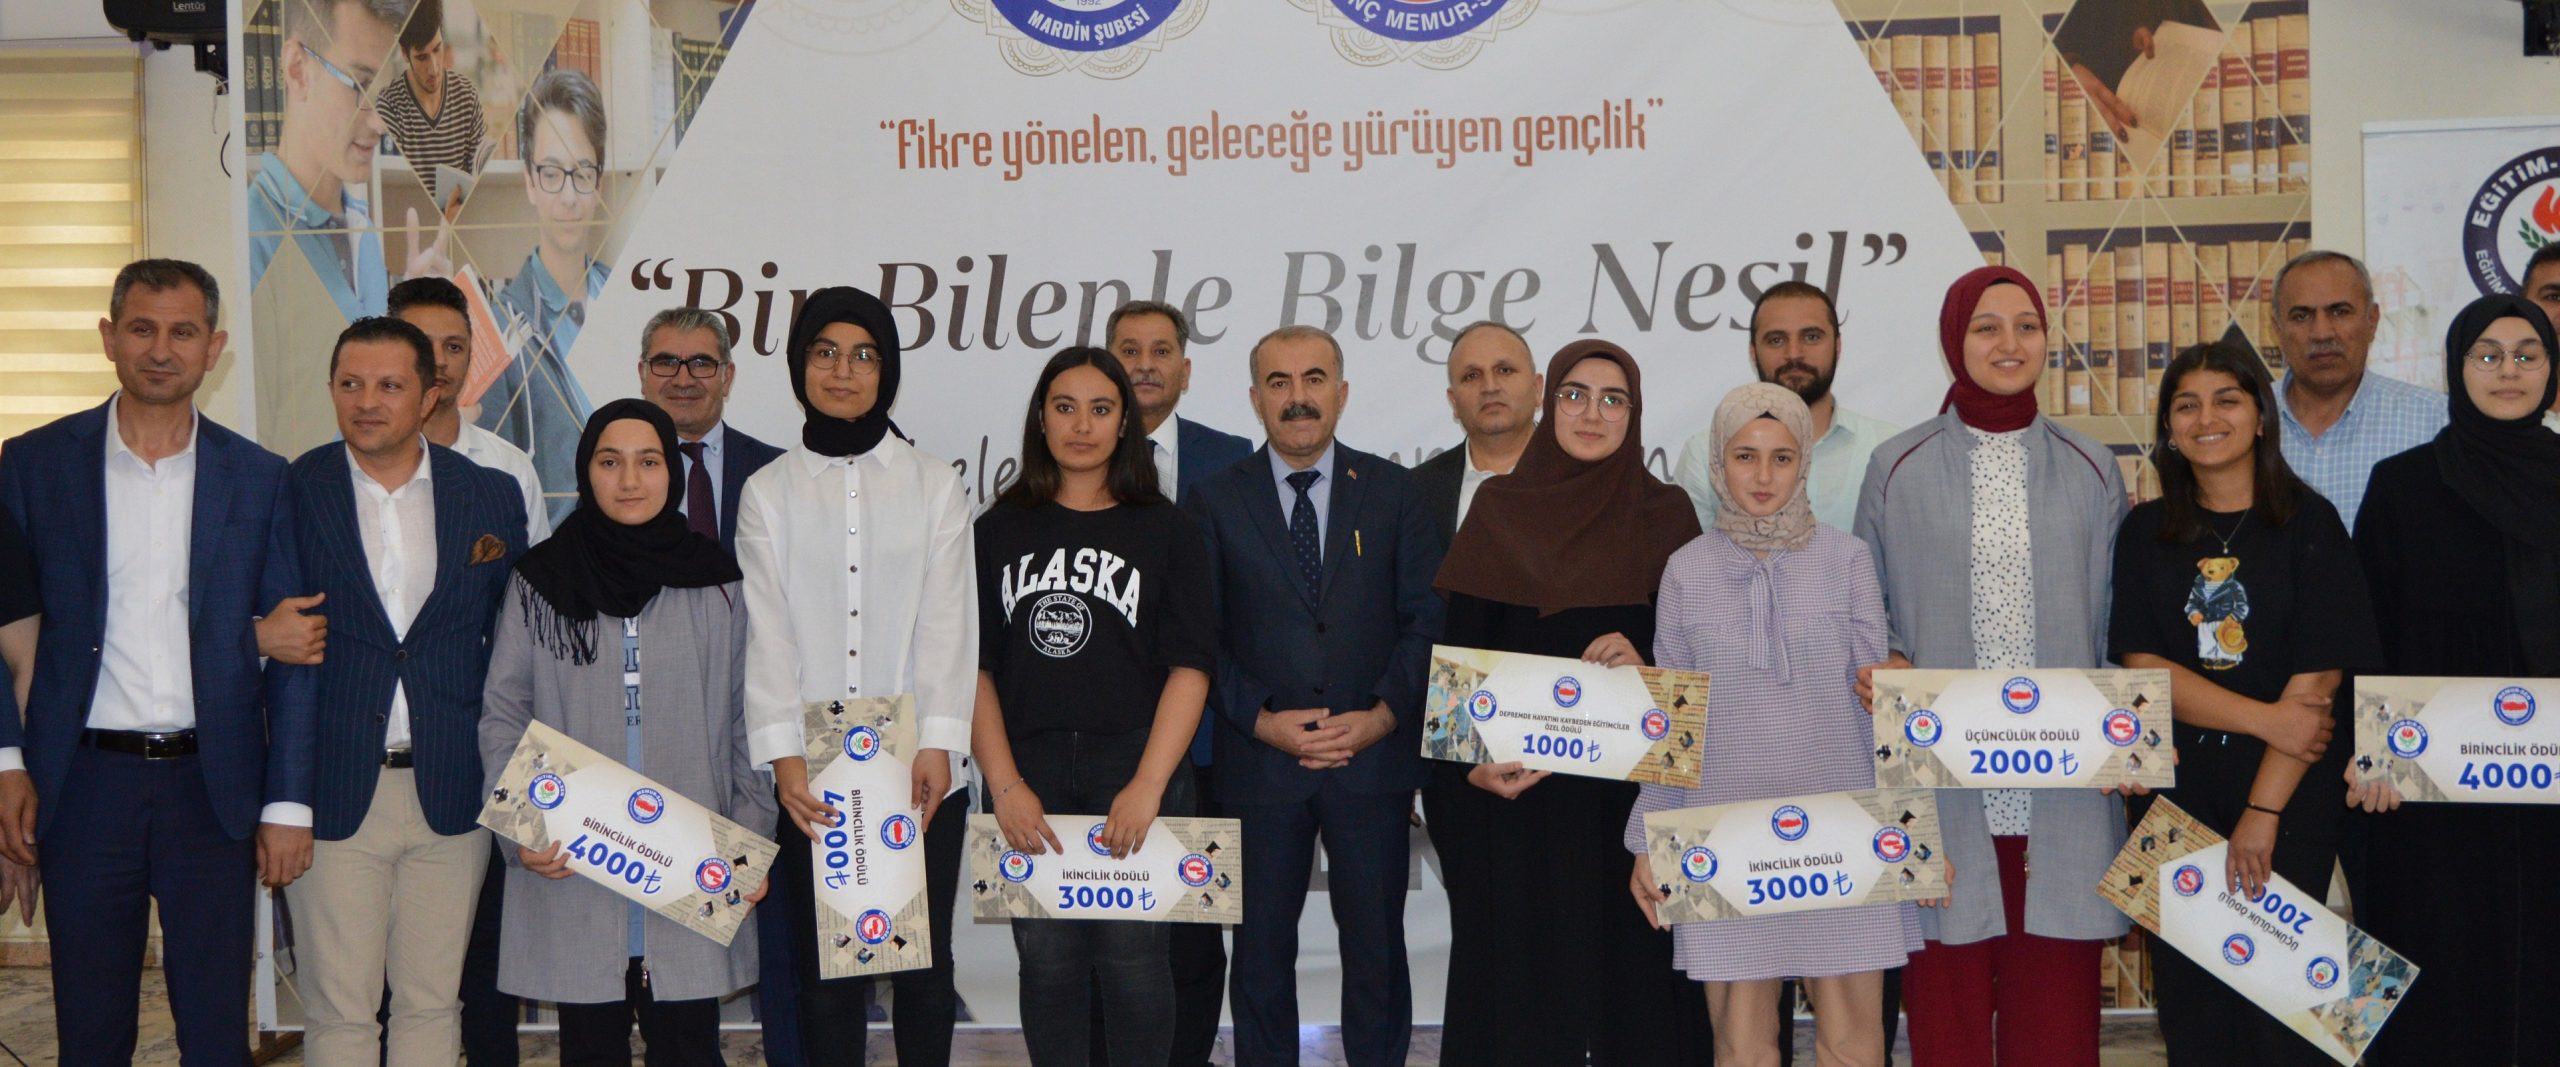 Mardin’de ‘Bir Bilenle Bilge Nesil’ yarışmasında dereceye giren öğrenciler ödüllendirildi